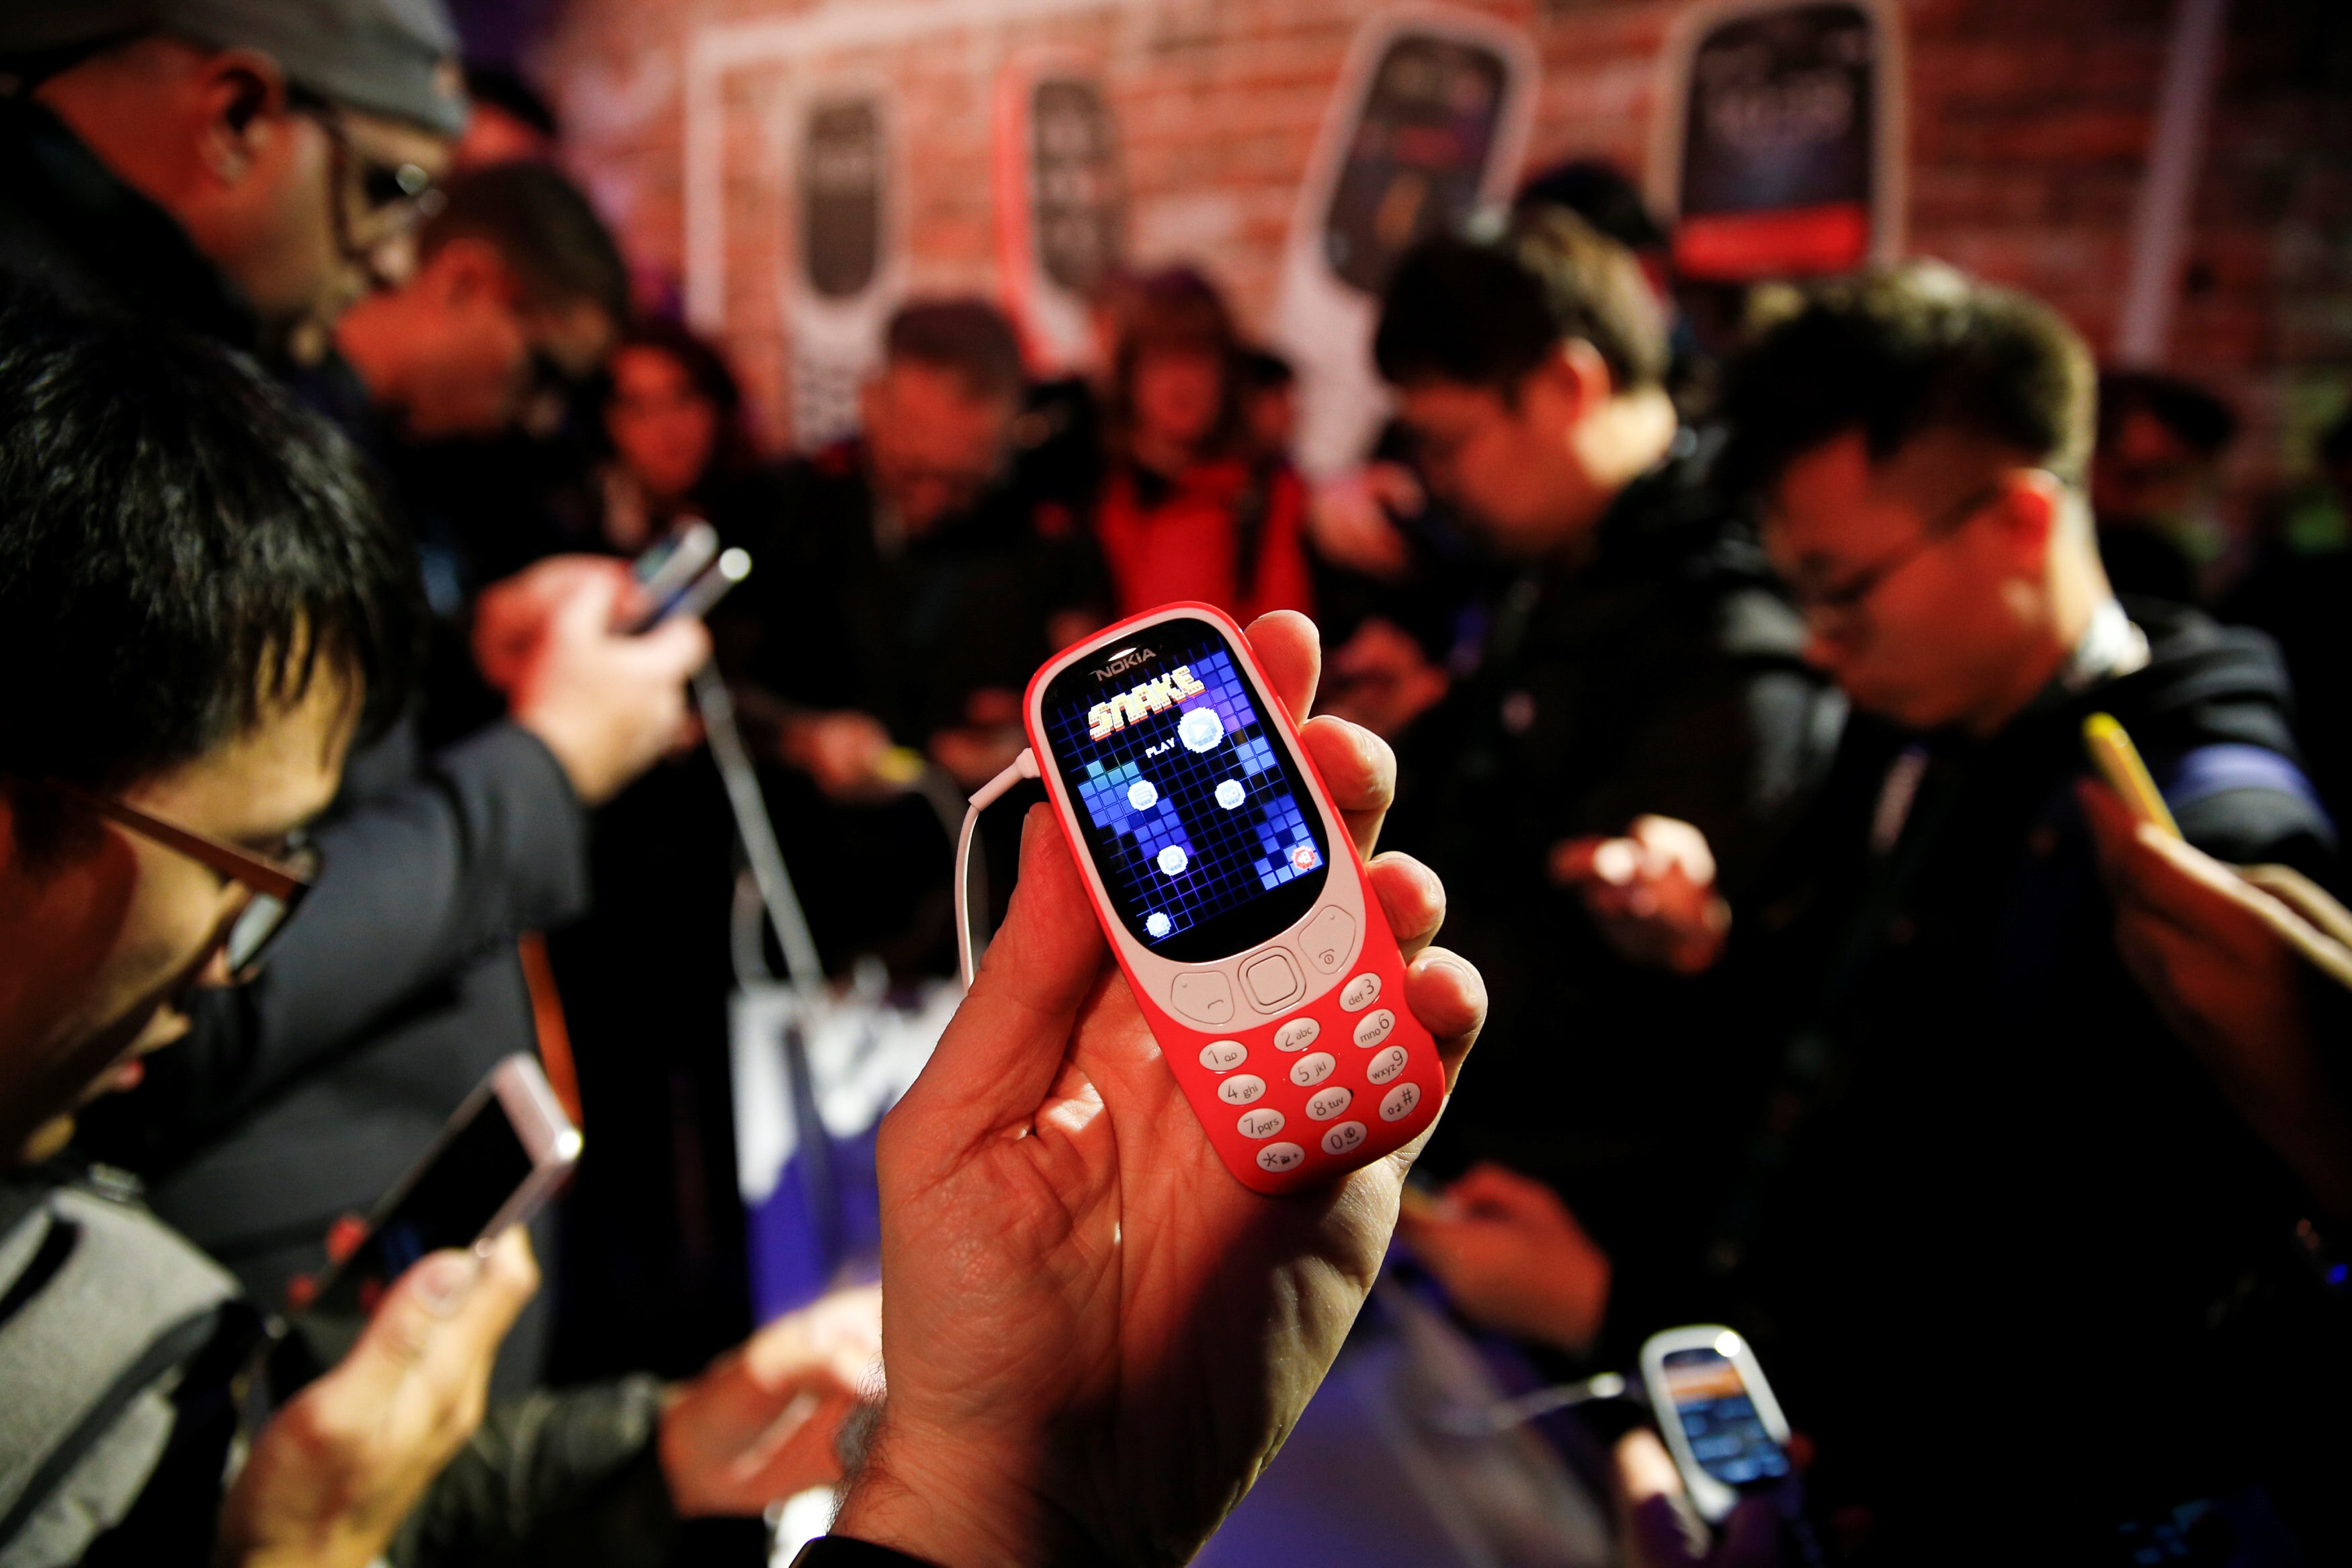 Clássico na MWC 2017: testamos o jogo da Cobrinha no novo Nokia 3310 -  TecMundo